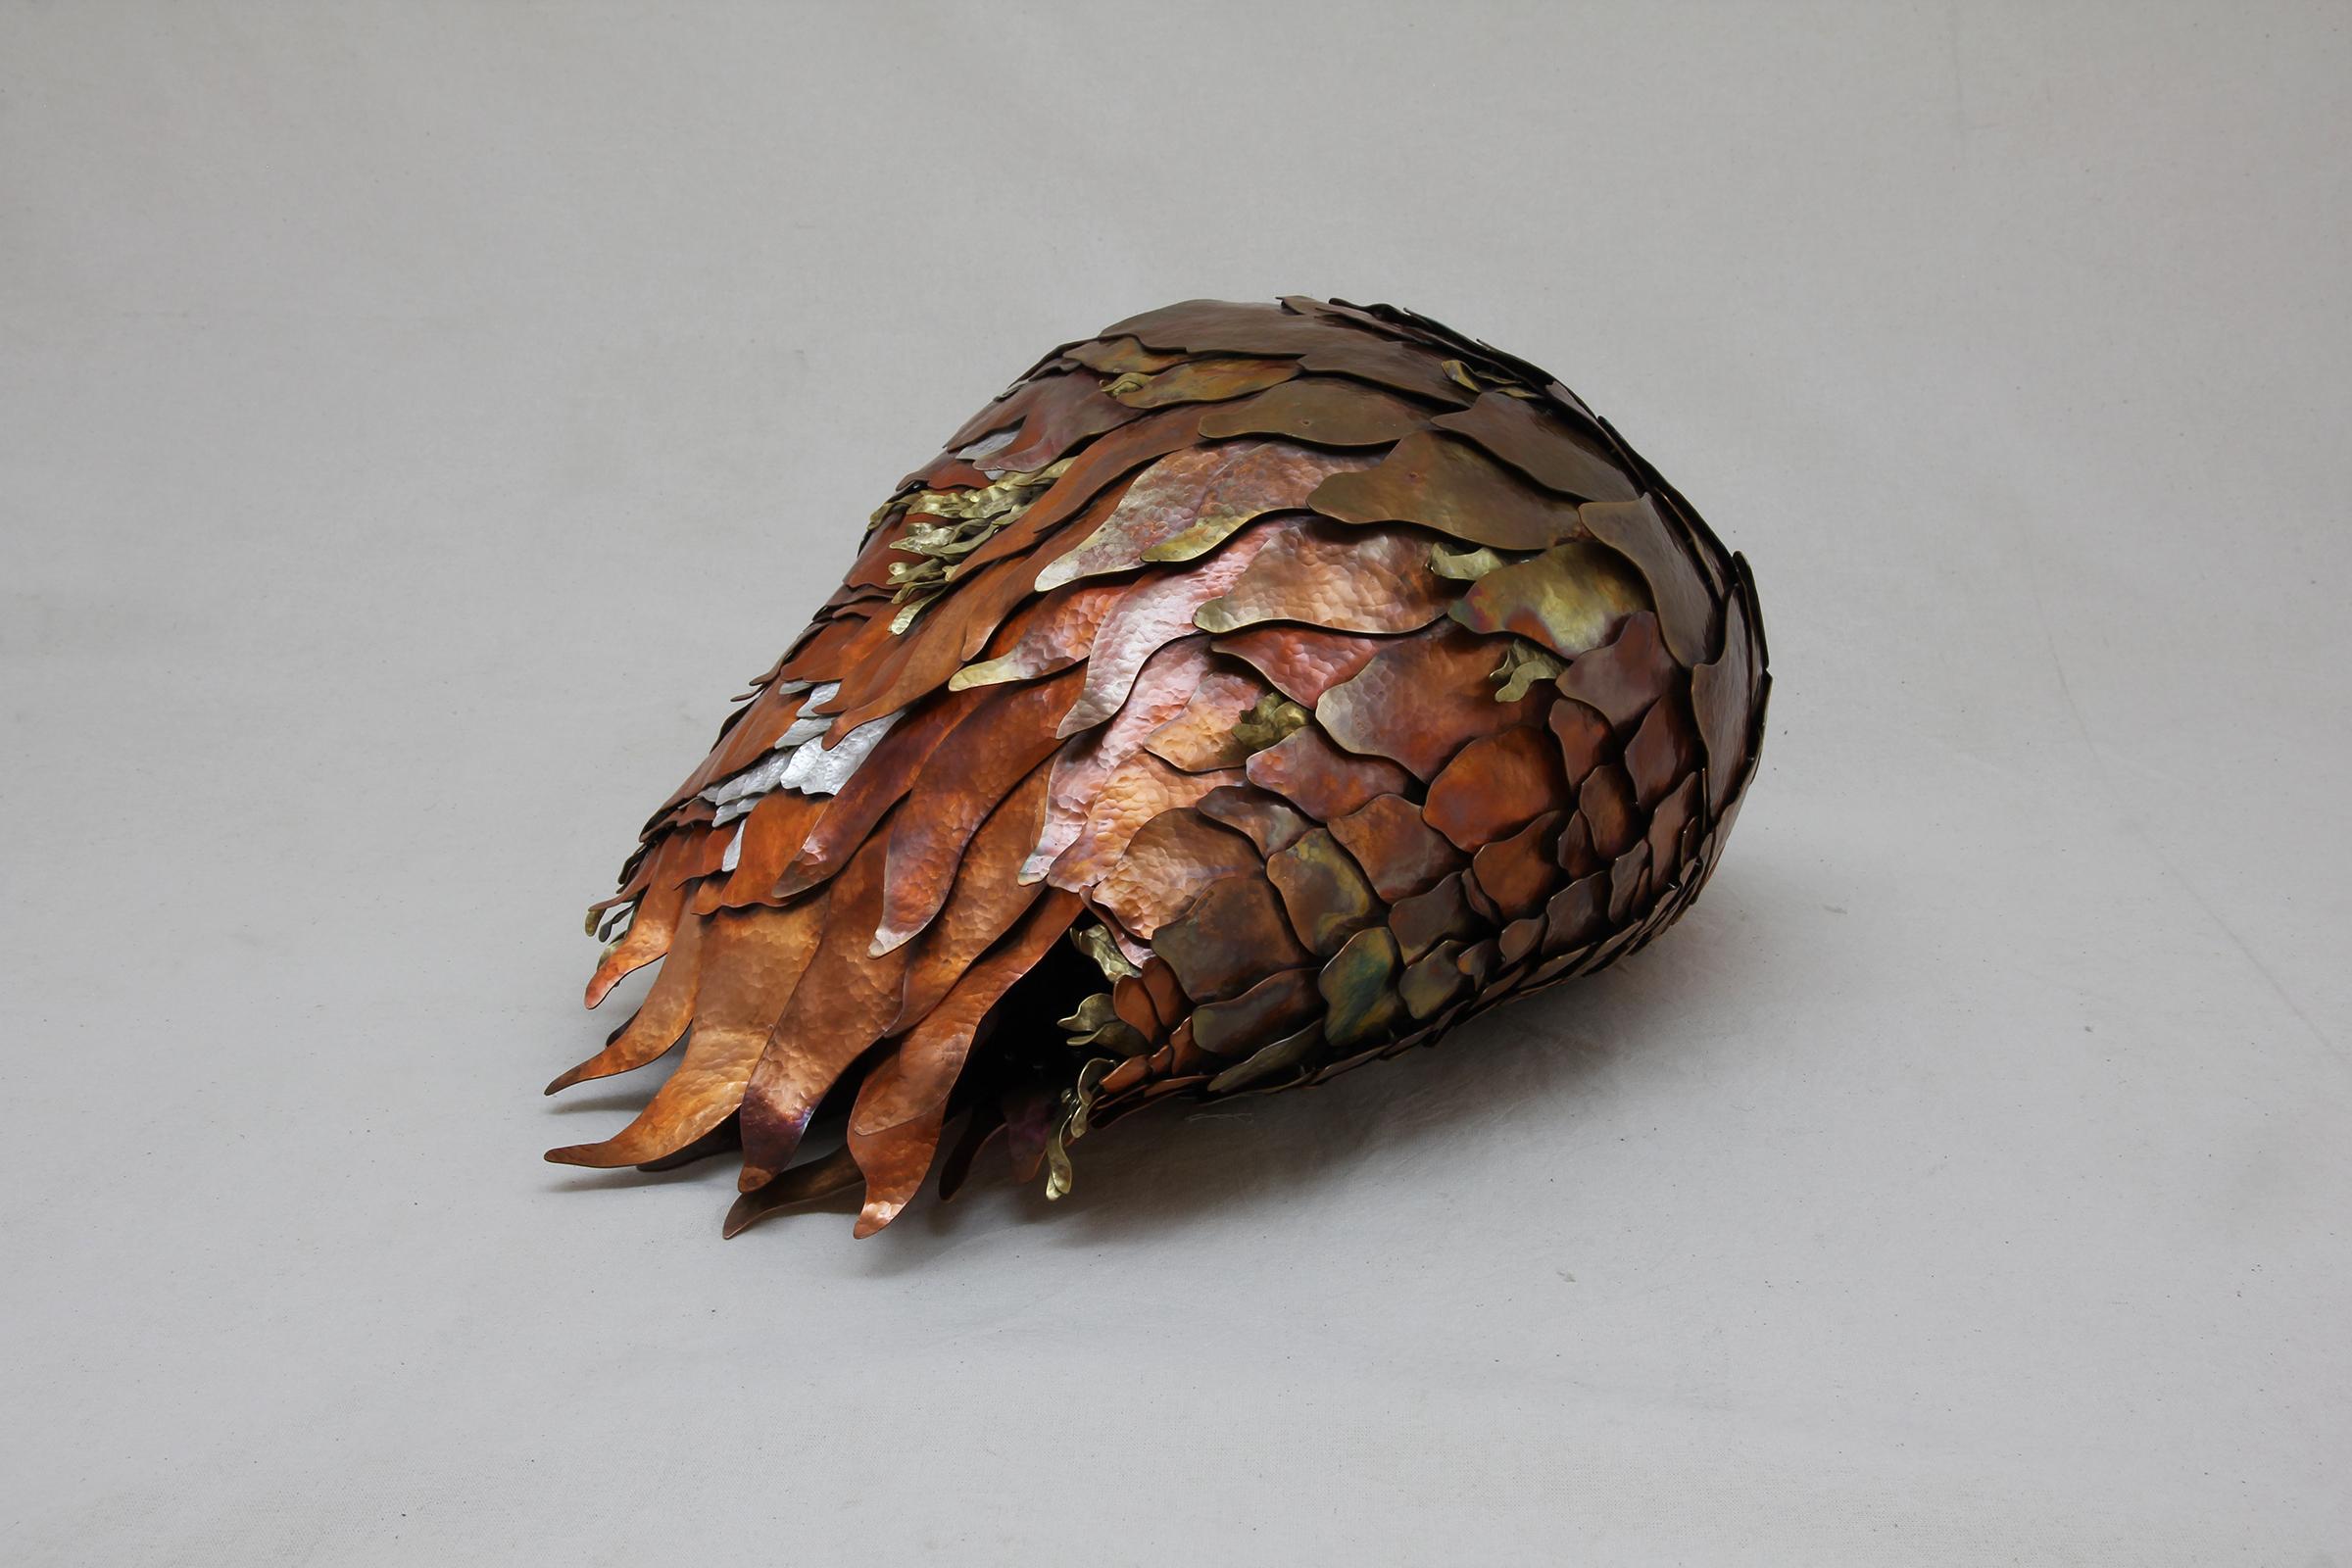 Inspirée par les formes organiques trouvées dans la nature, cette sculpture abstraite conçue par Eduardo Herrera et fabriquée en argent .950, en cuivre traité thermiquement et en tumbaga (un alliage de cuivre et de zinc), chaque maillon de cette